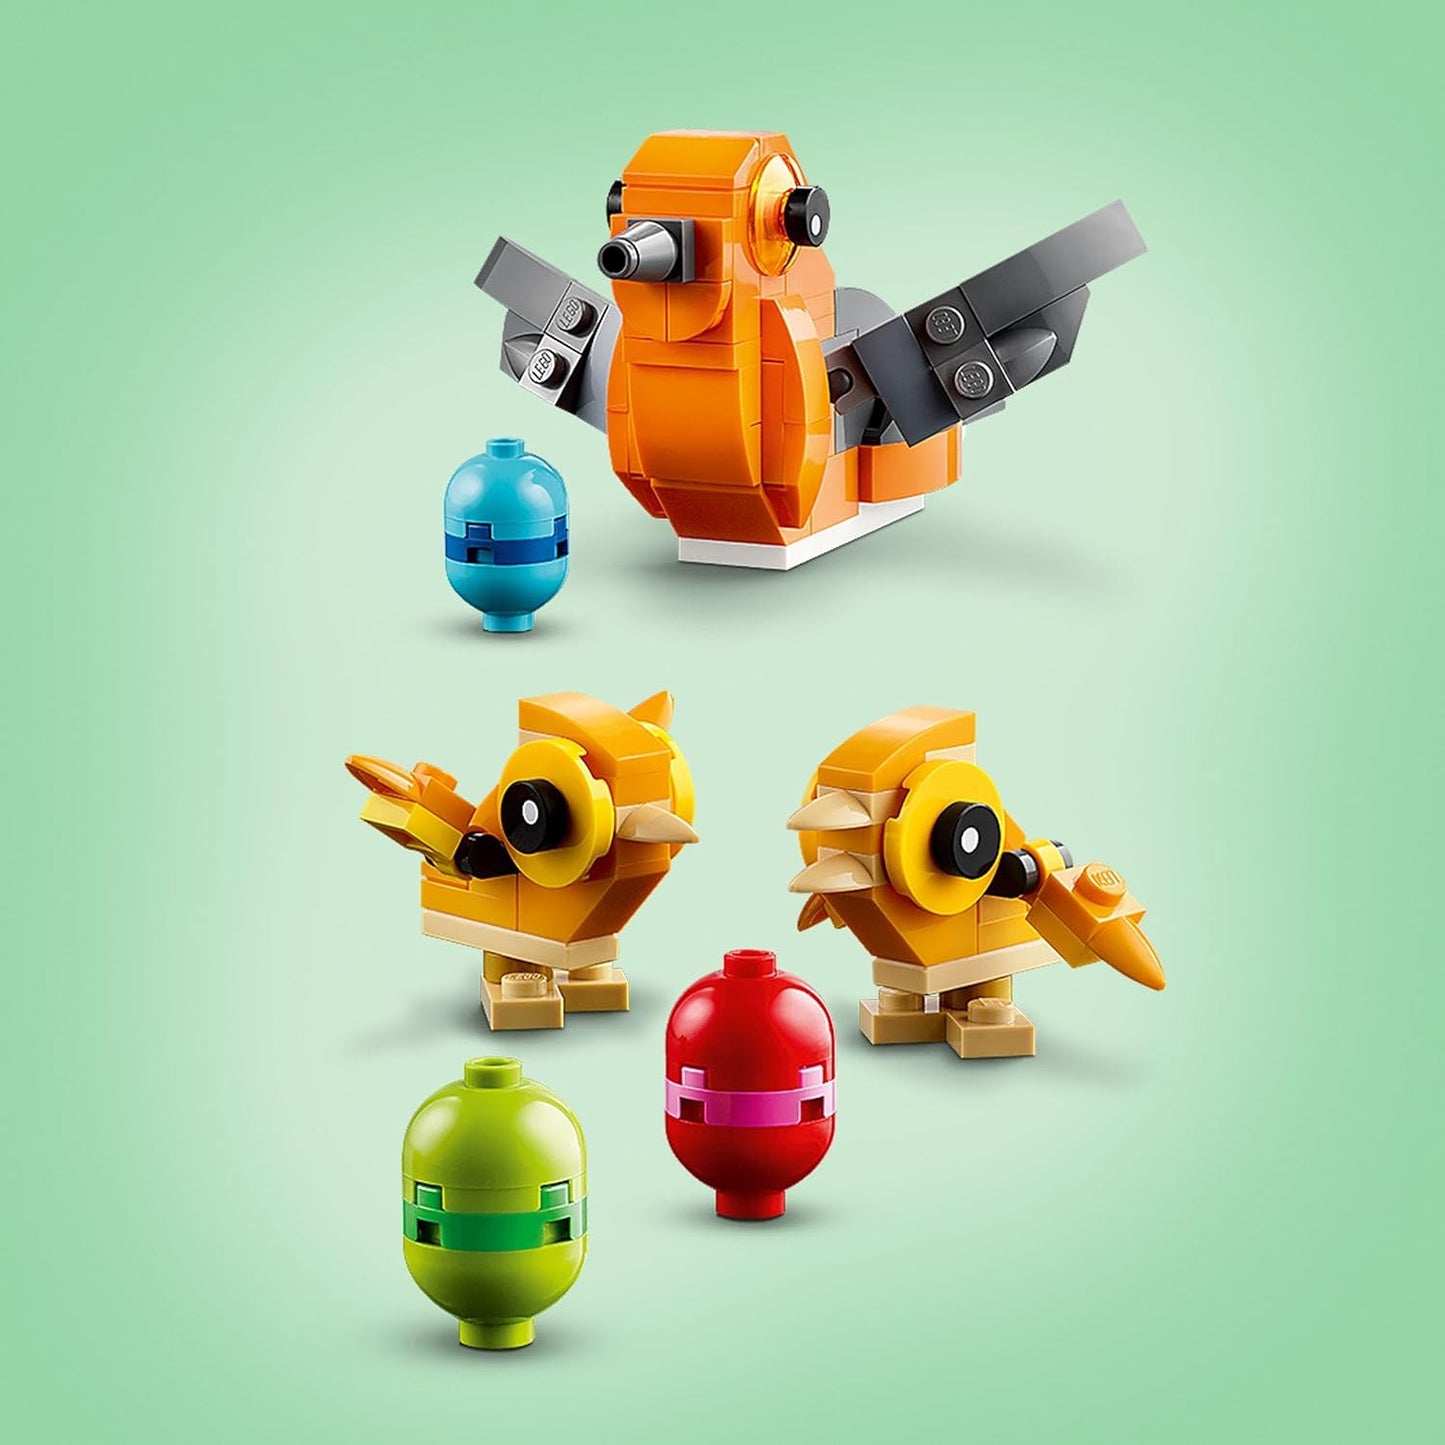 LEGO Conjunto de ninho de pássaro criador, brinquedos de construção para meninas, meninos e crianças de 9 anos ou mais com paixão por animais, inclui 3 pássaros de brinquedo, decoração de quarto infantil, presente de Páscoa, ideia de presente